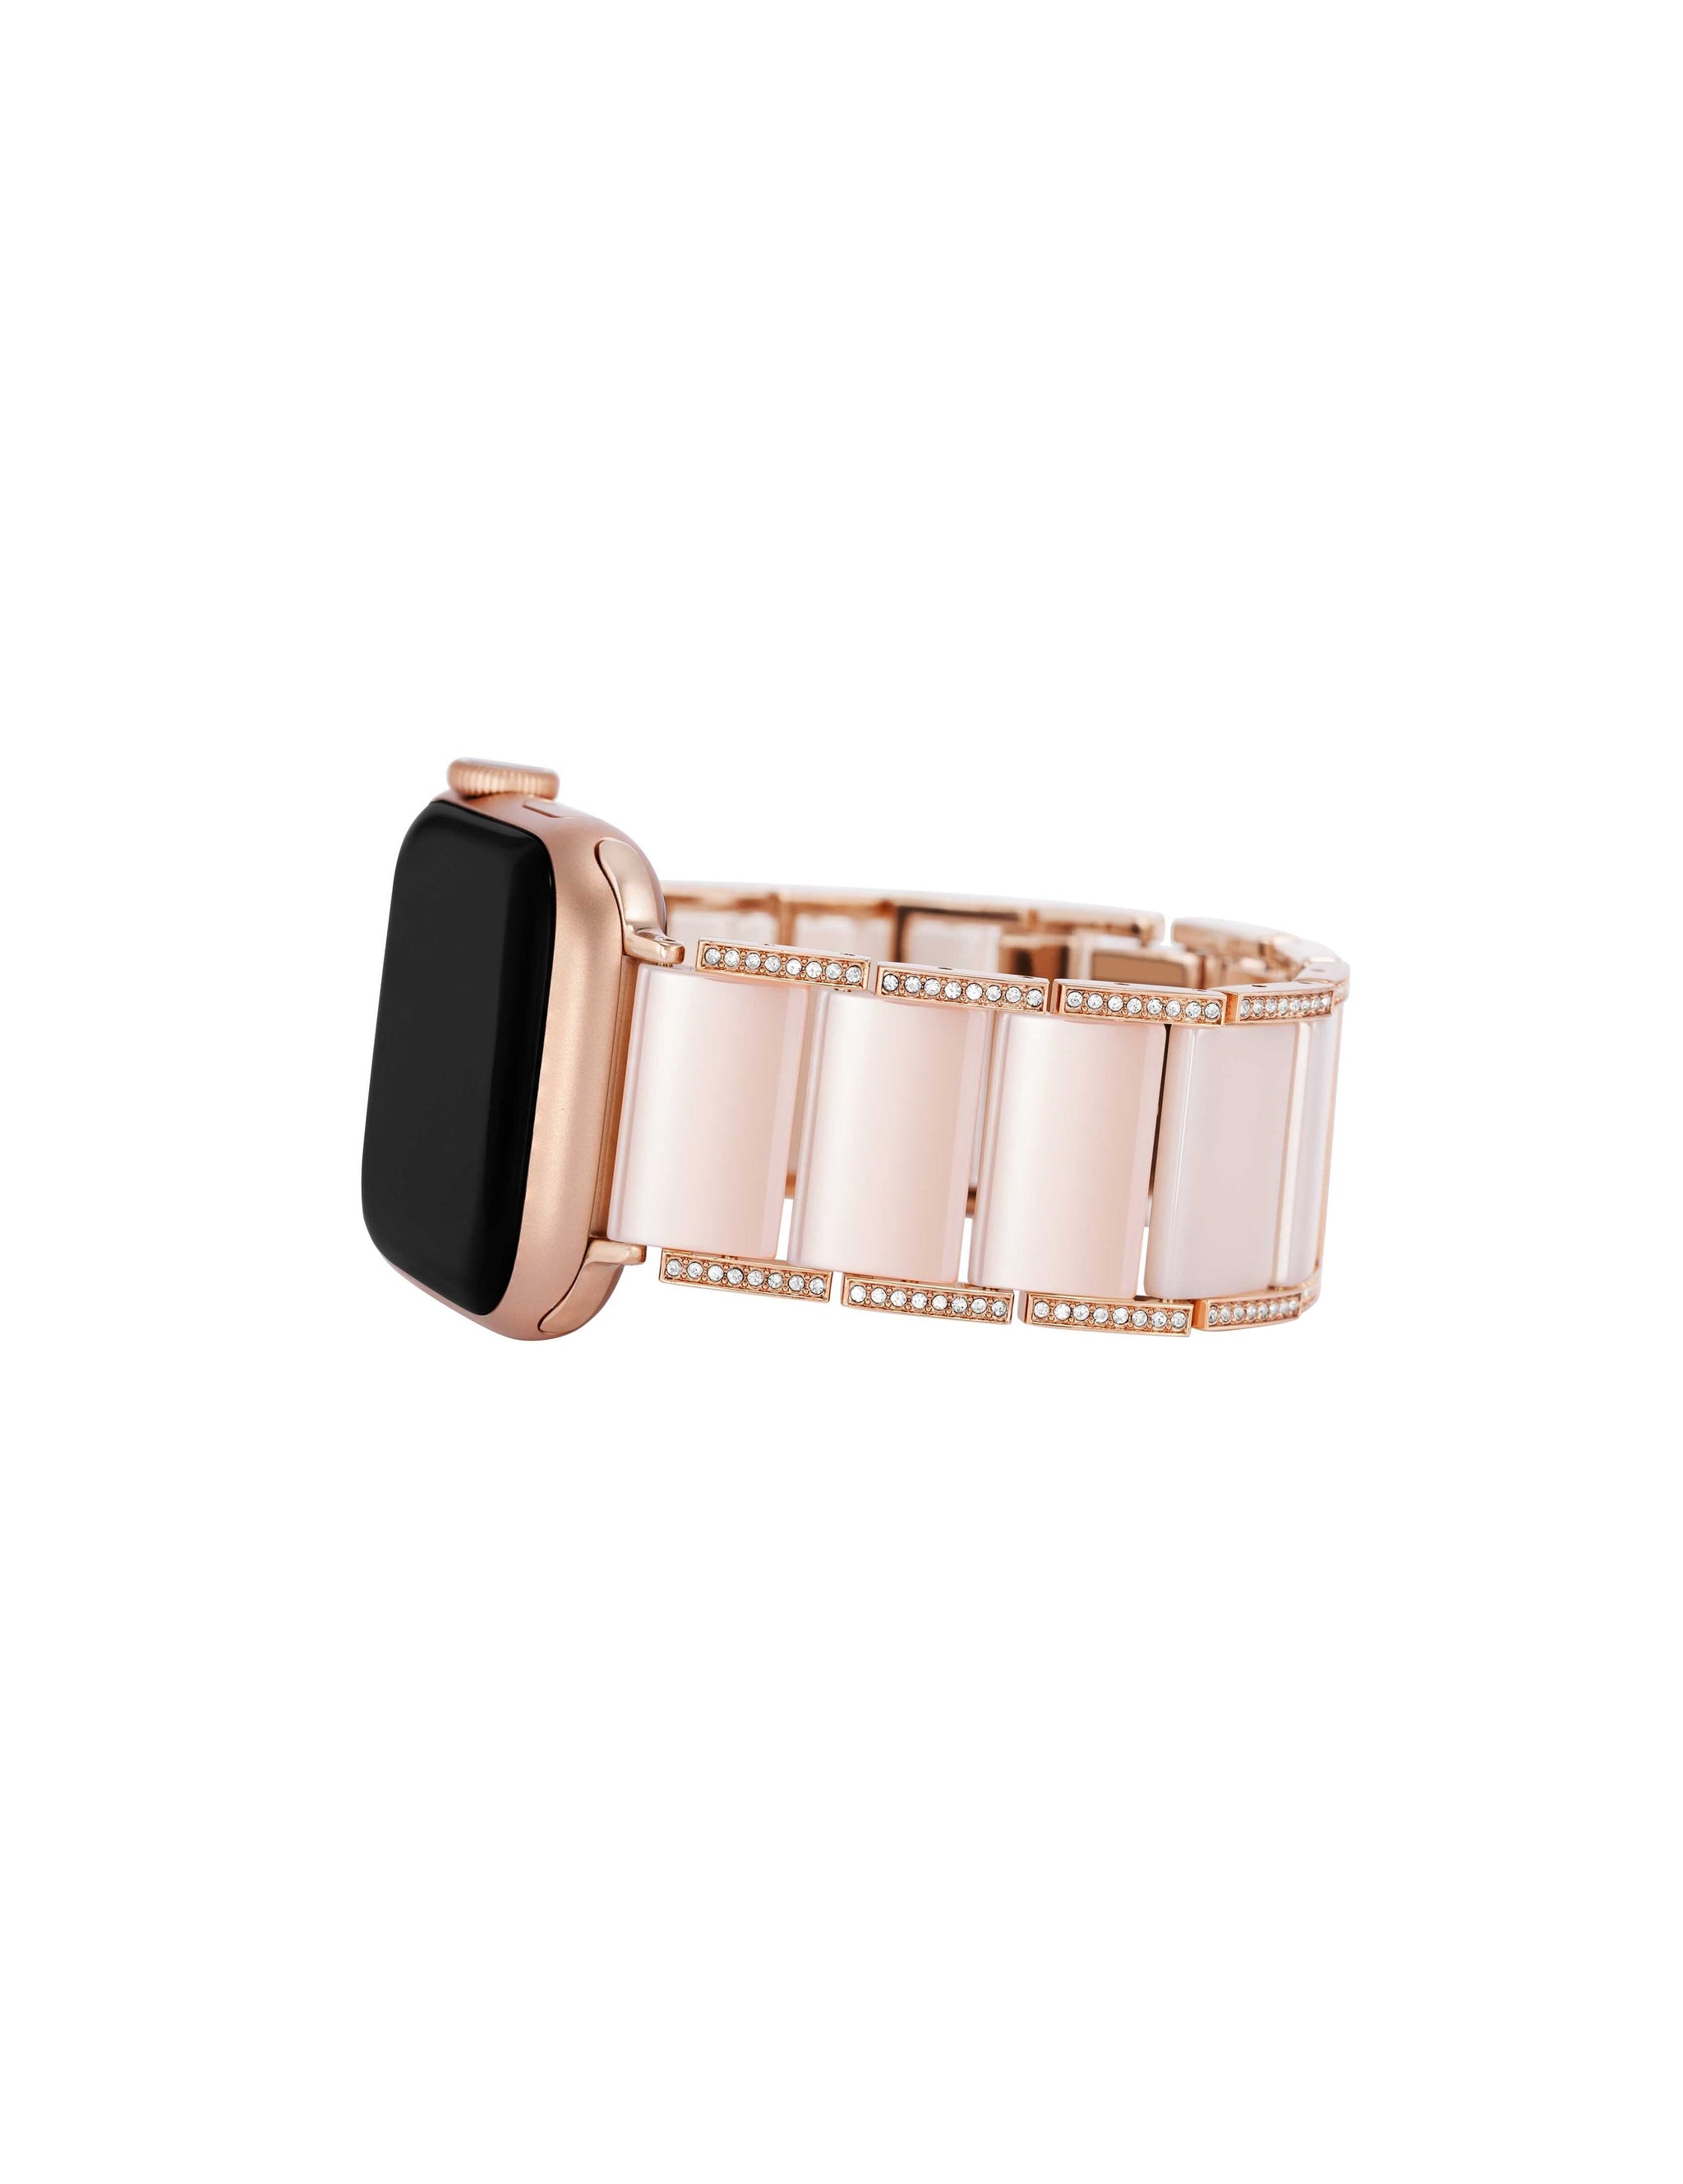 Enamel Link Bracelet Band for Apple Watch¨ Blush/Rose Gold-Tone